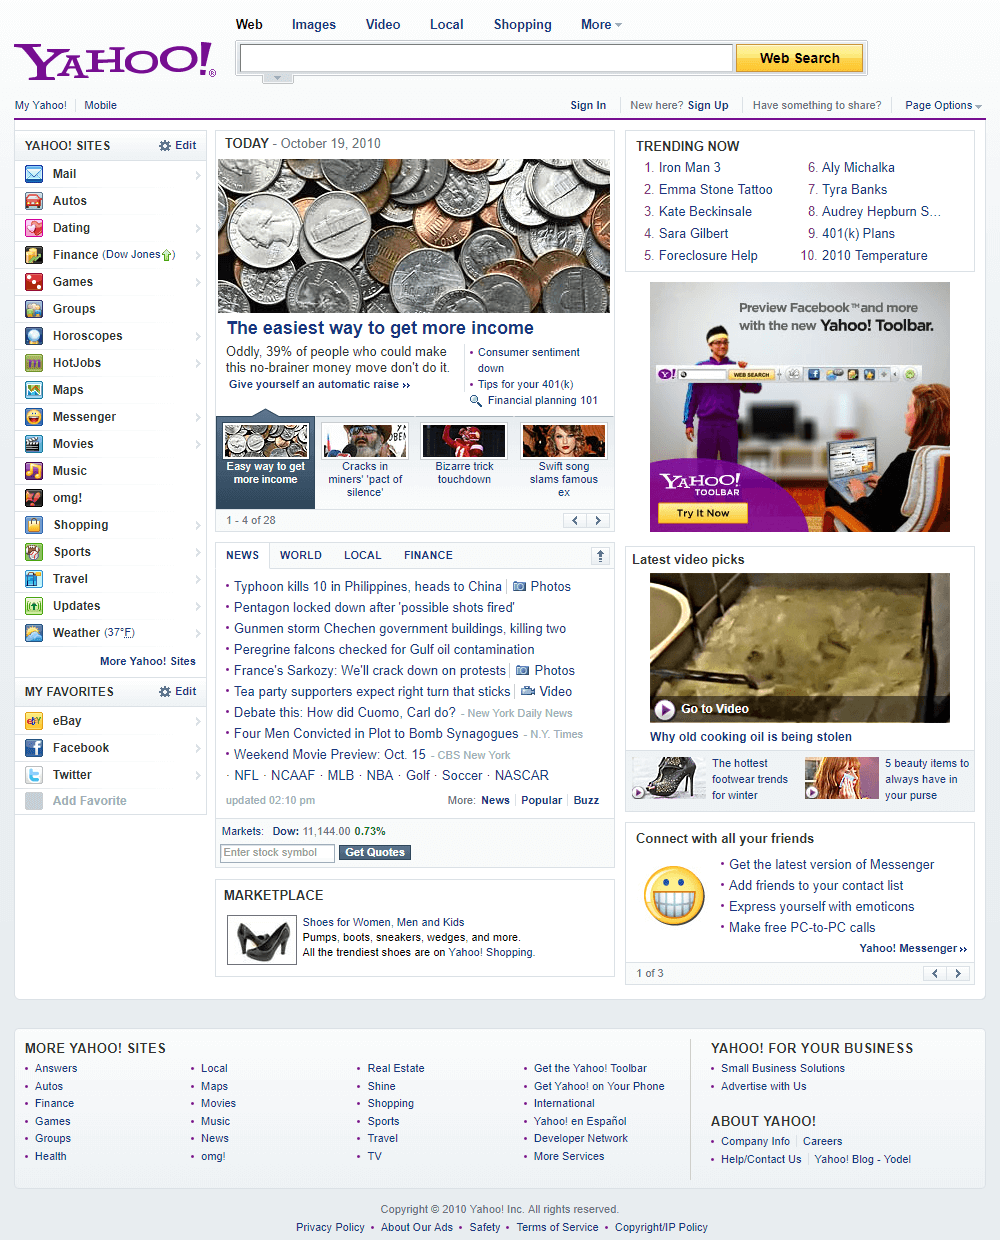 Yahoo website in 2010